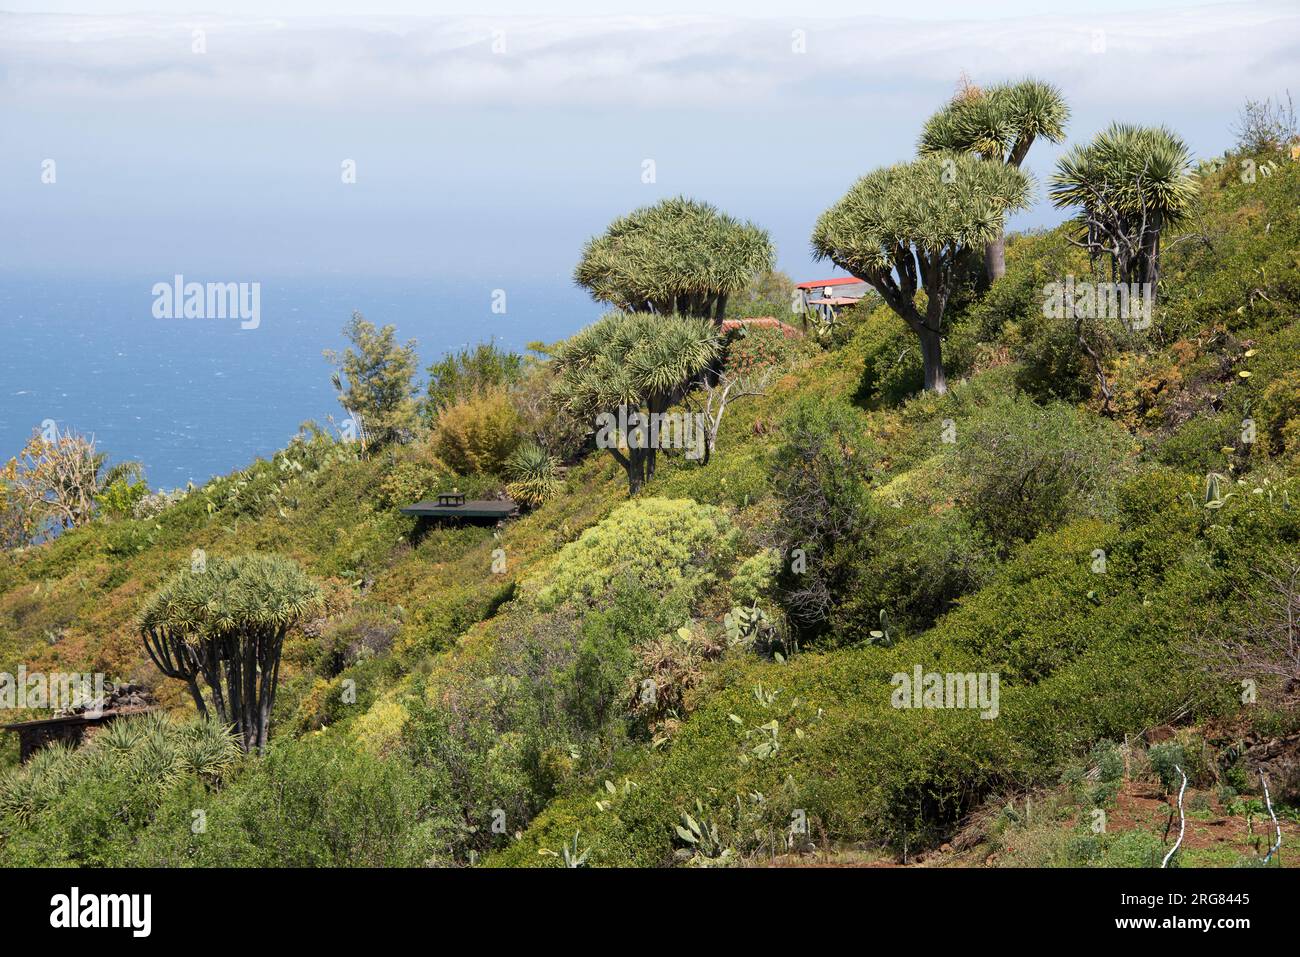 Drago ou dragons des îles Canaries (Dracaena draco) est une plante semblable à un arbre originaire de la région de Macaronésie. Cette photo a été prise à Las Tricias, Garafía, Banque D'Images